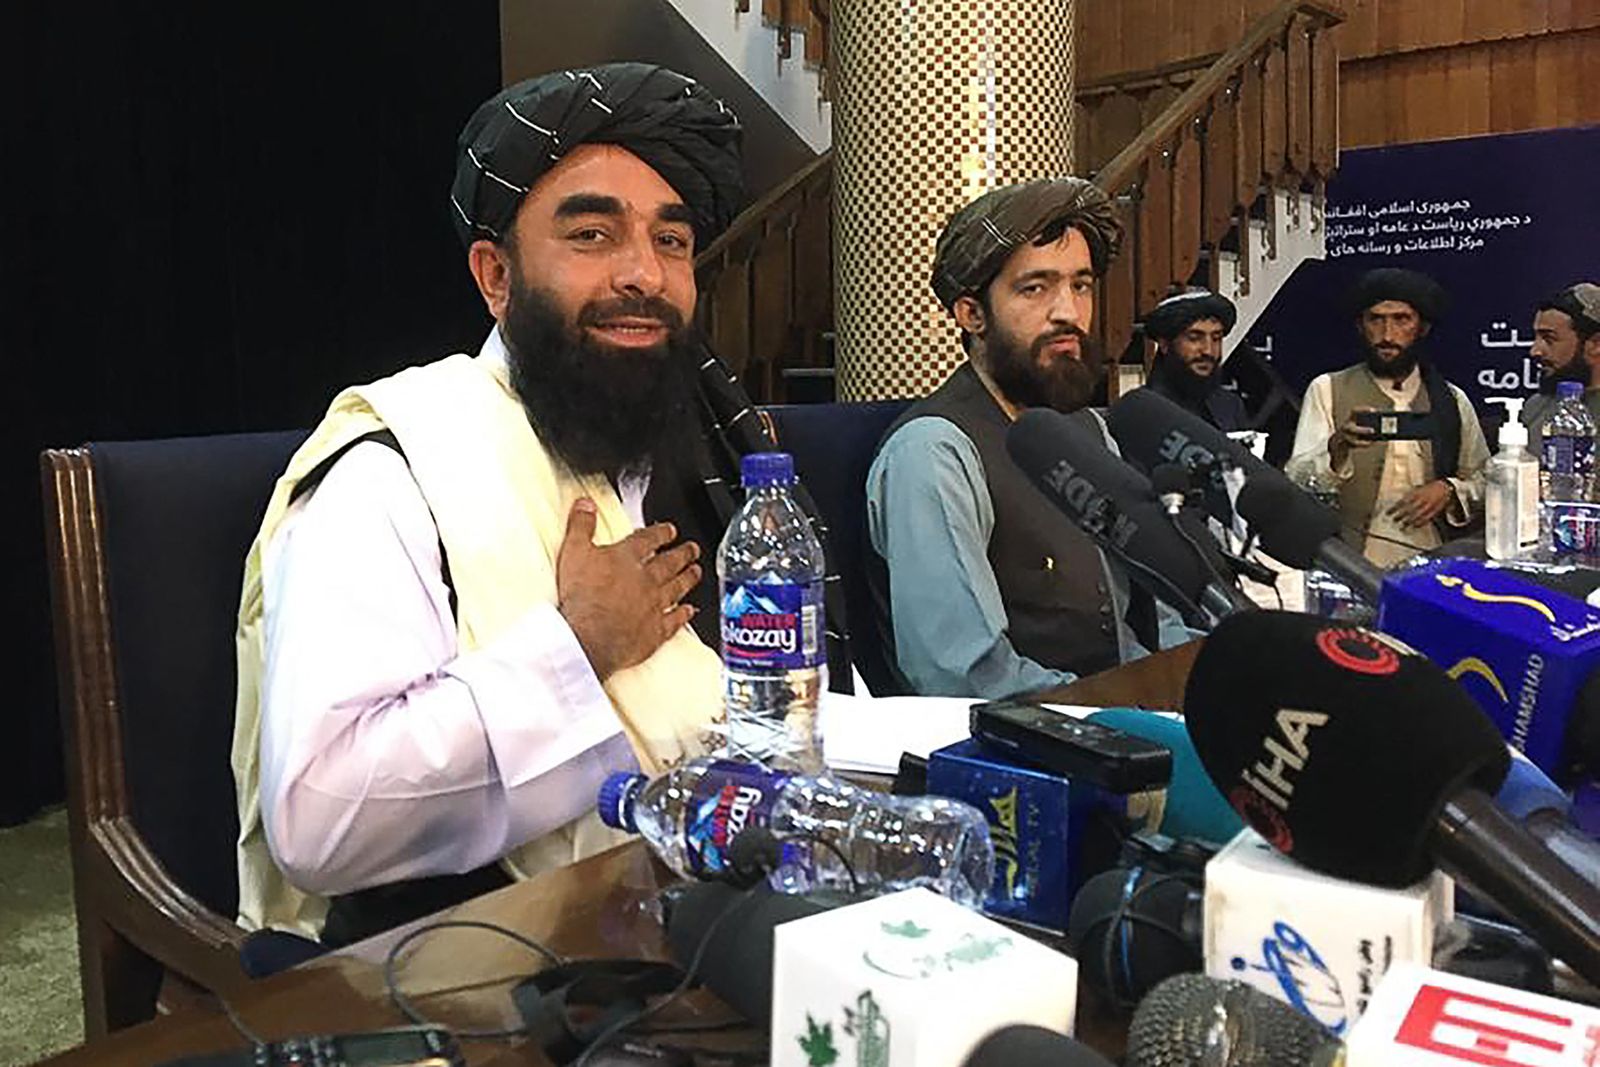 المتحدث باسم طالبان ذبيح الله مجاهد - 17 أغسطس 2021 - AFP